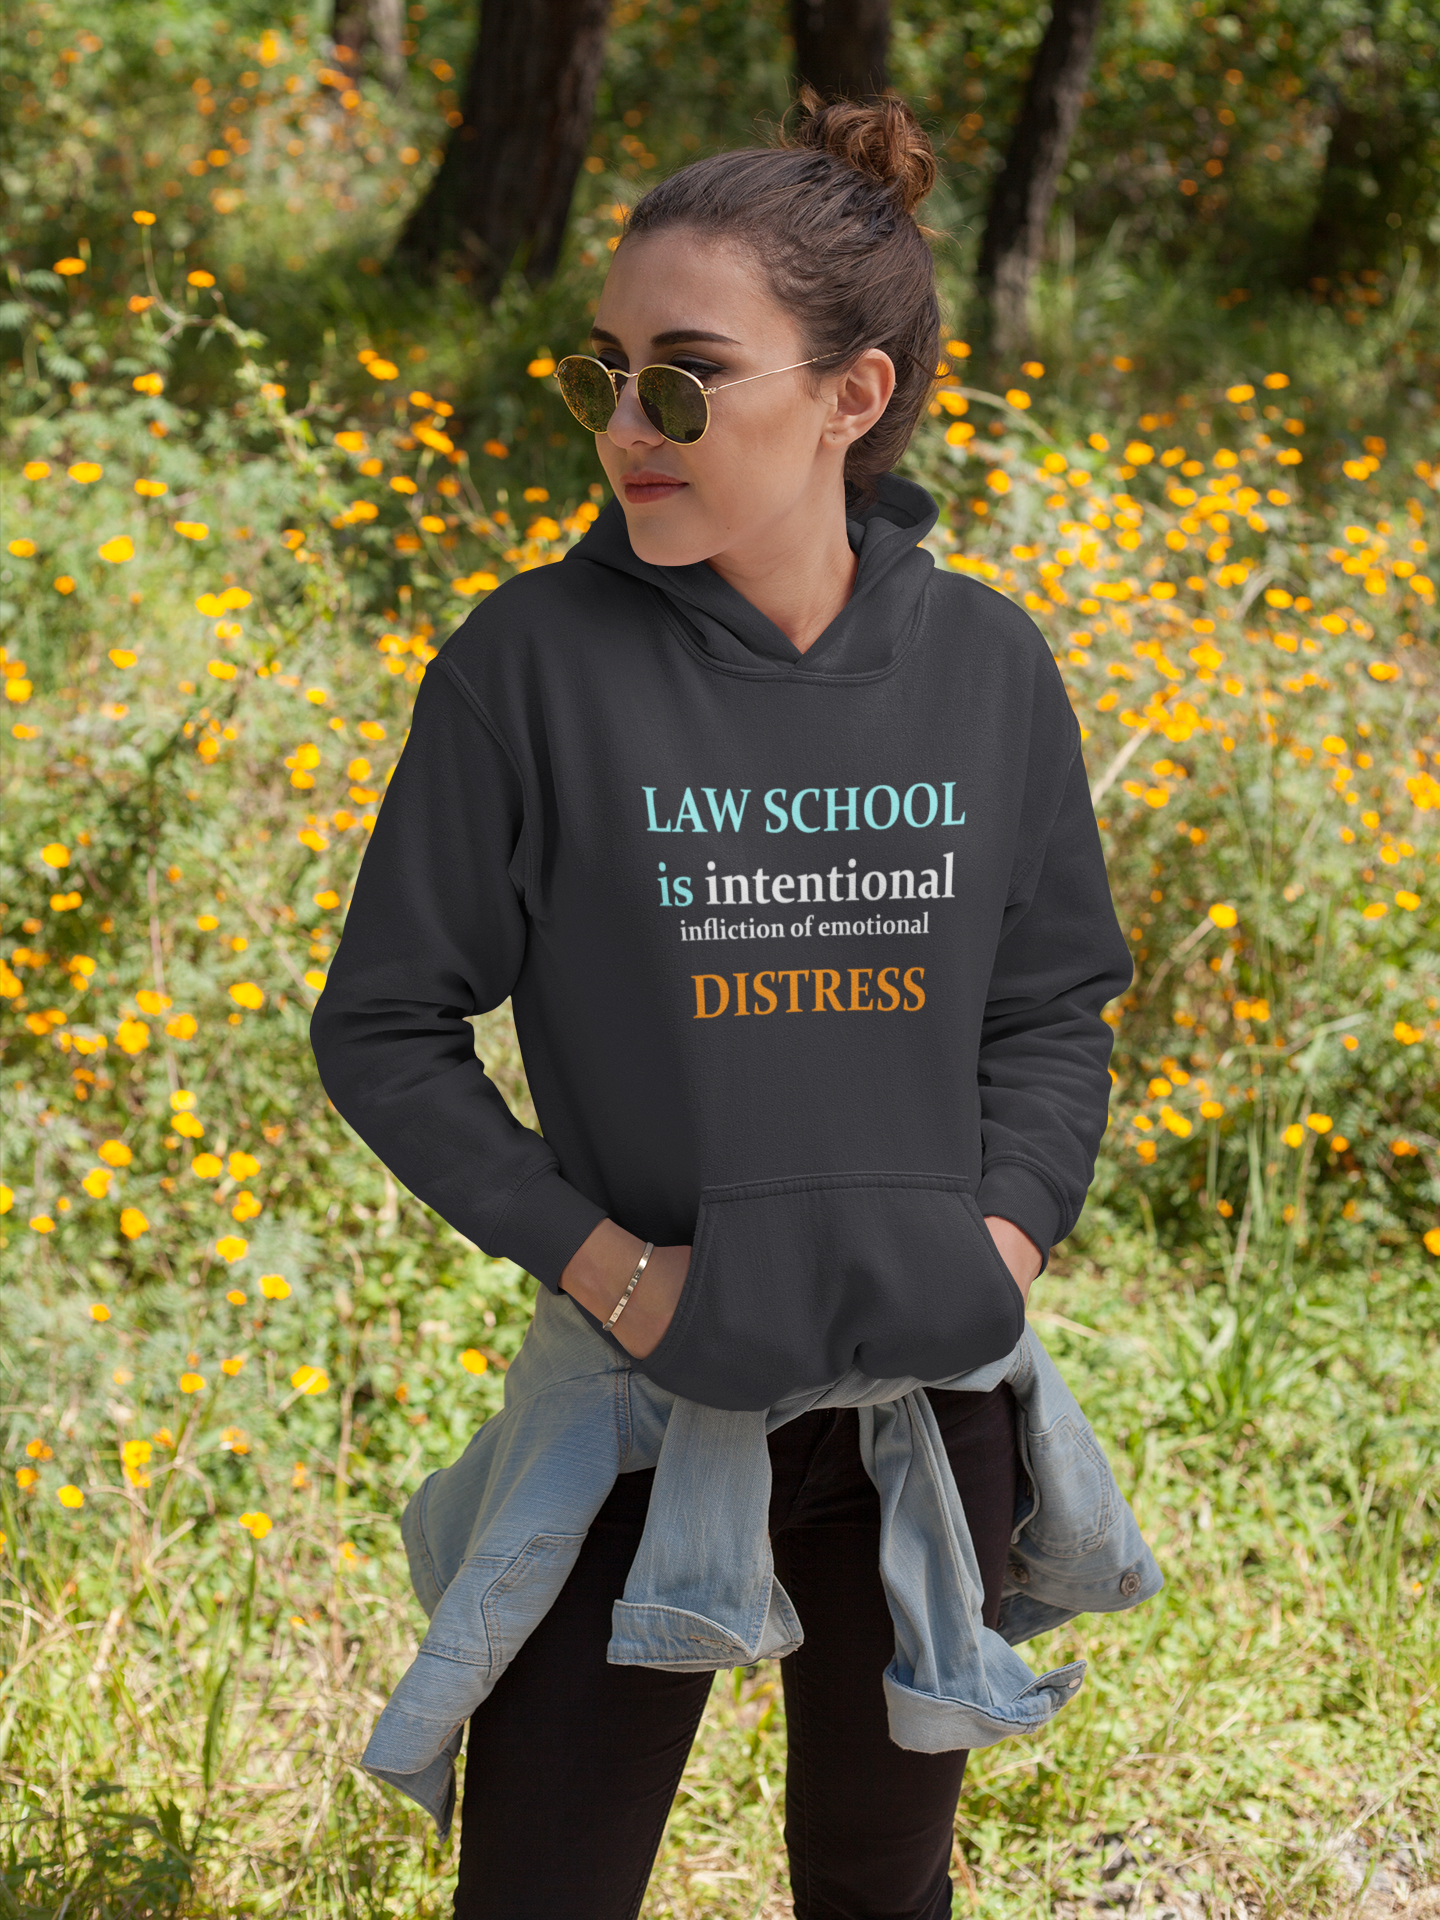 Law School is Intentional Distress Lawyer Hoodies for Women-FunkyTeesClub